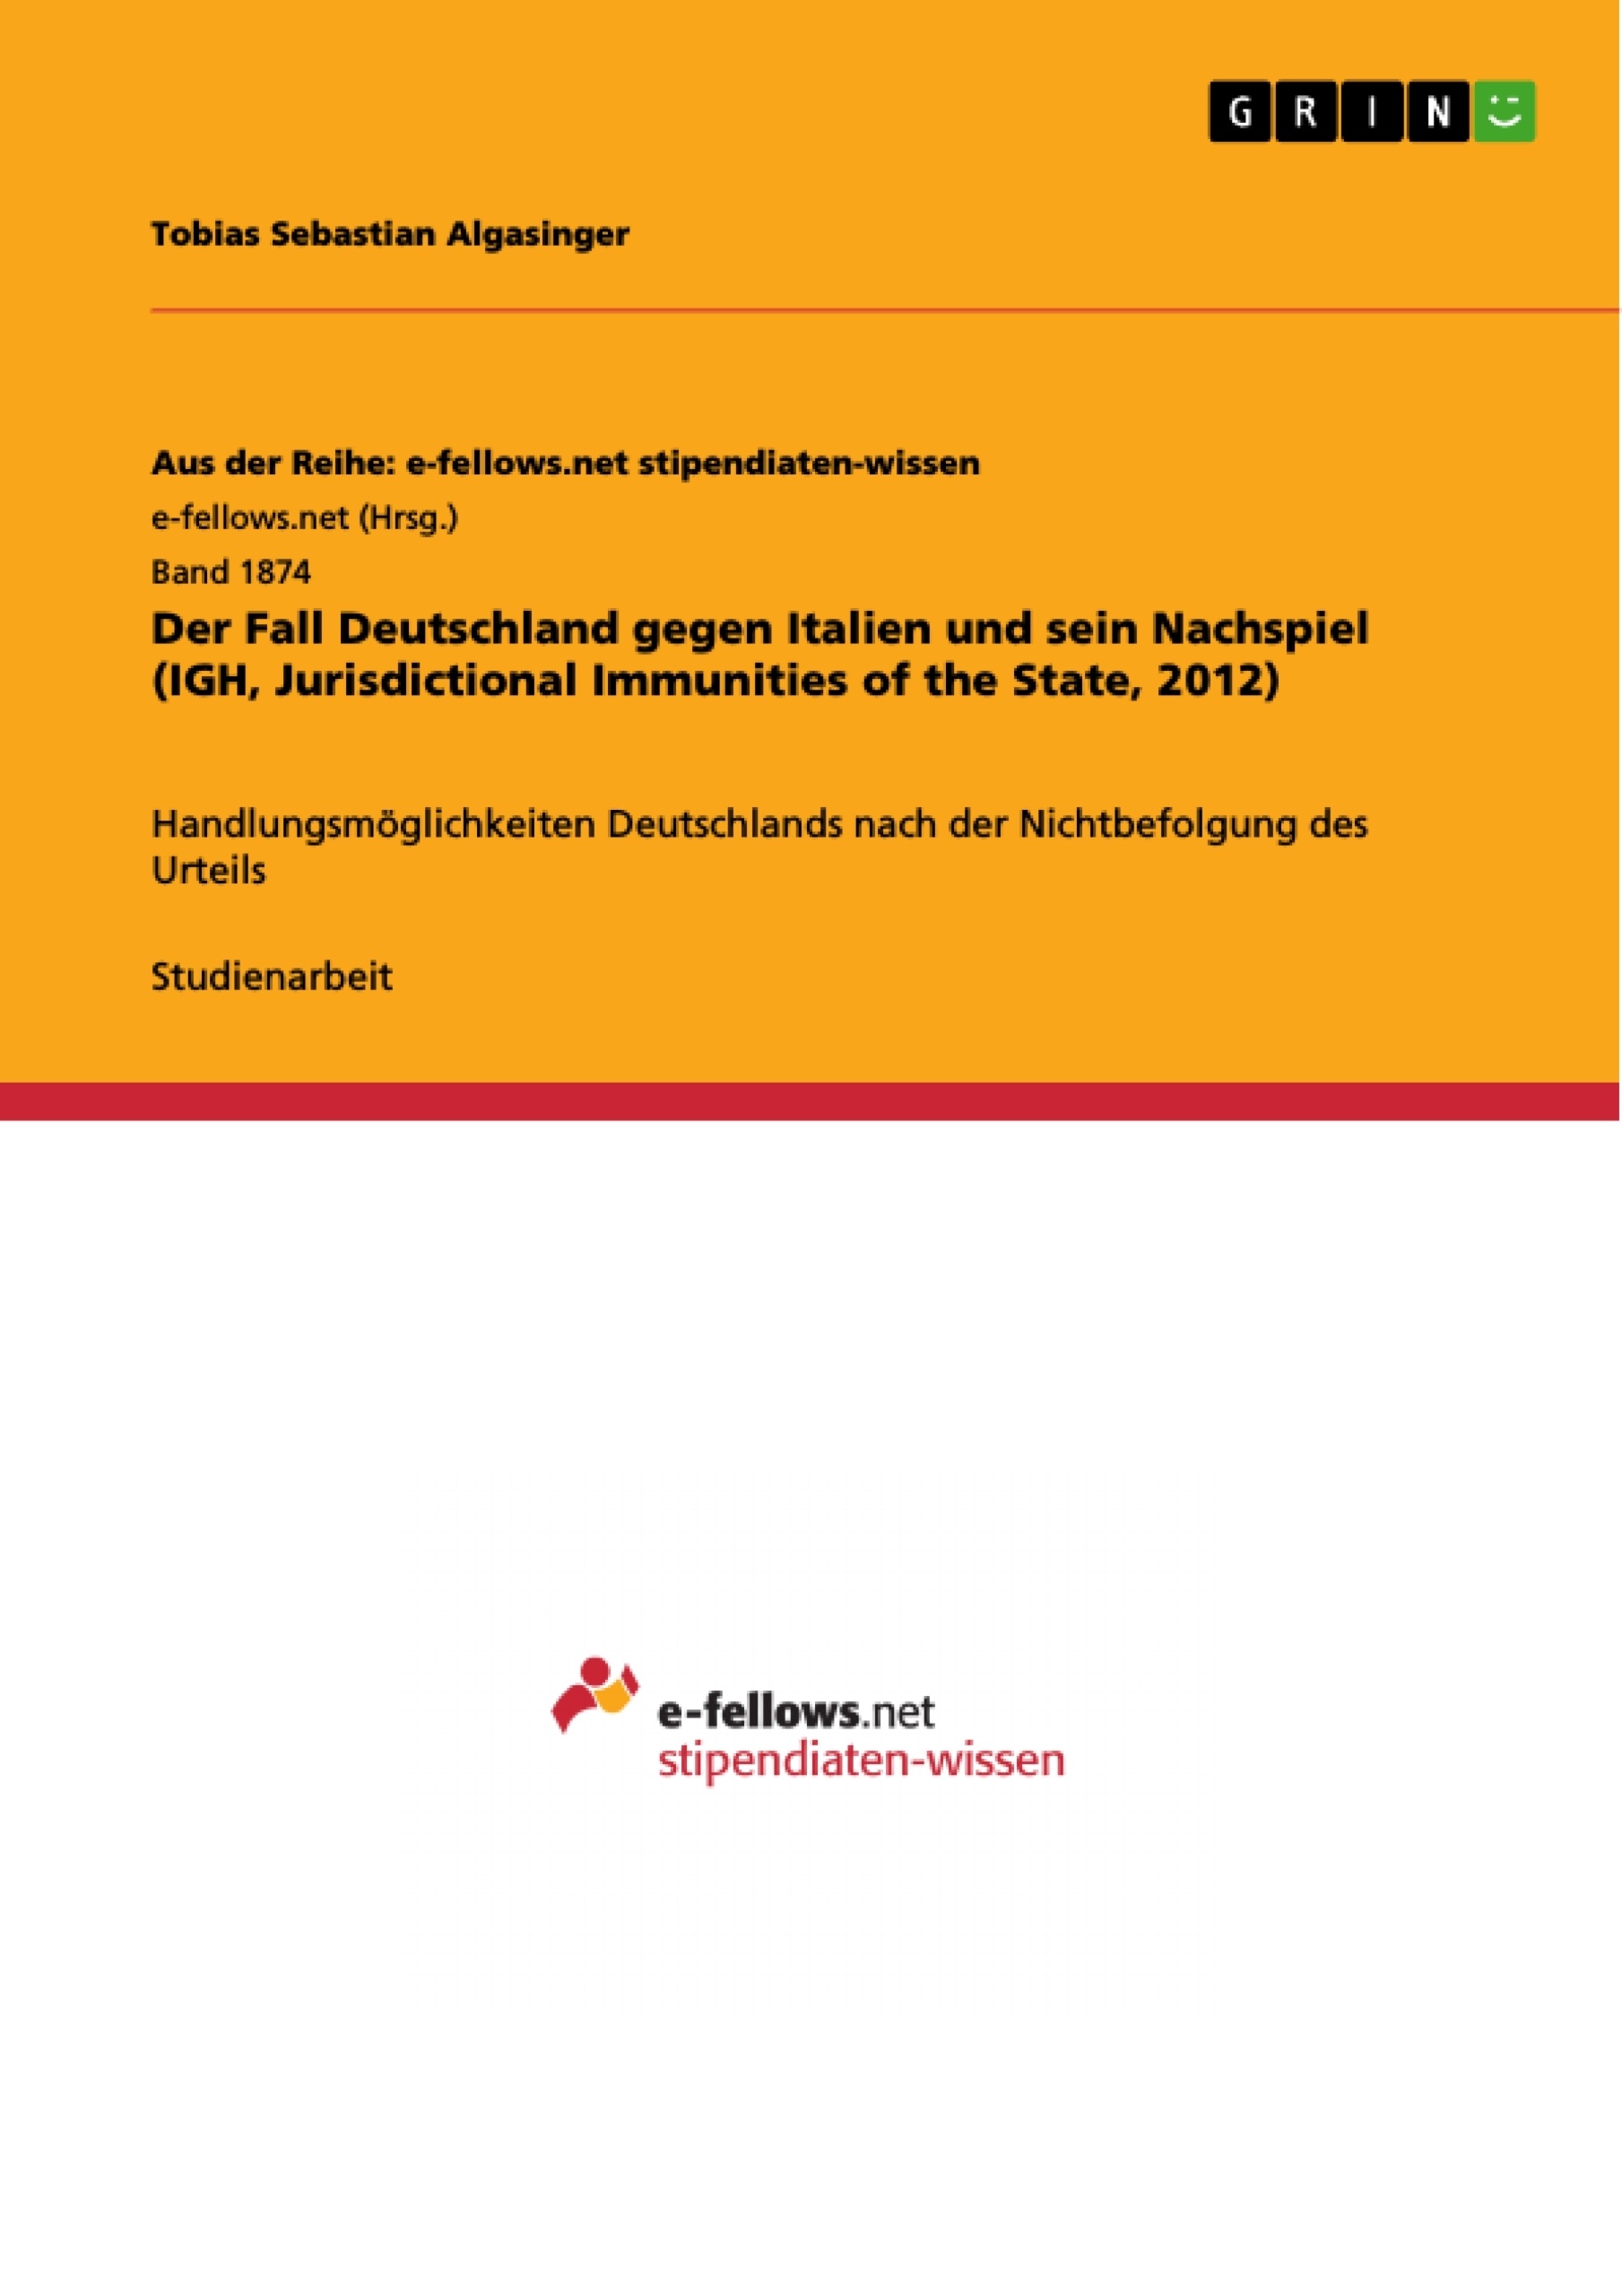 Titre: Der Fall Deutschland gegen Italien und sein Nachspiel (IGH, Jurisdictional Immunities of the State, 2012)